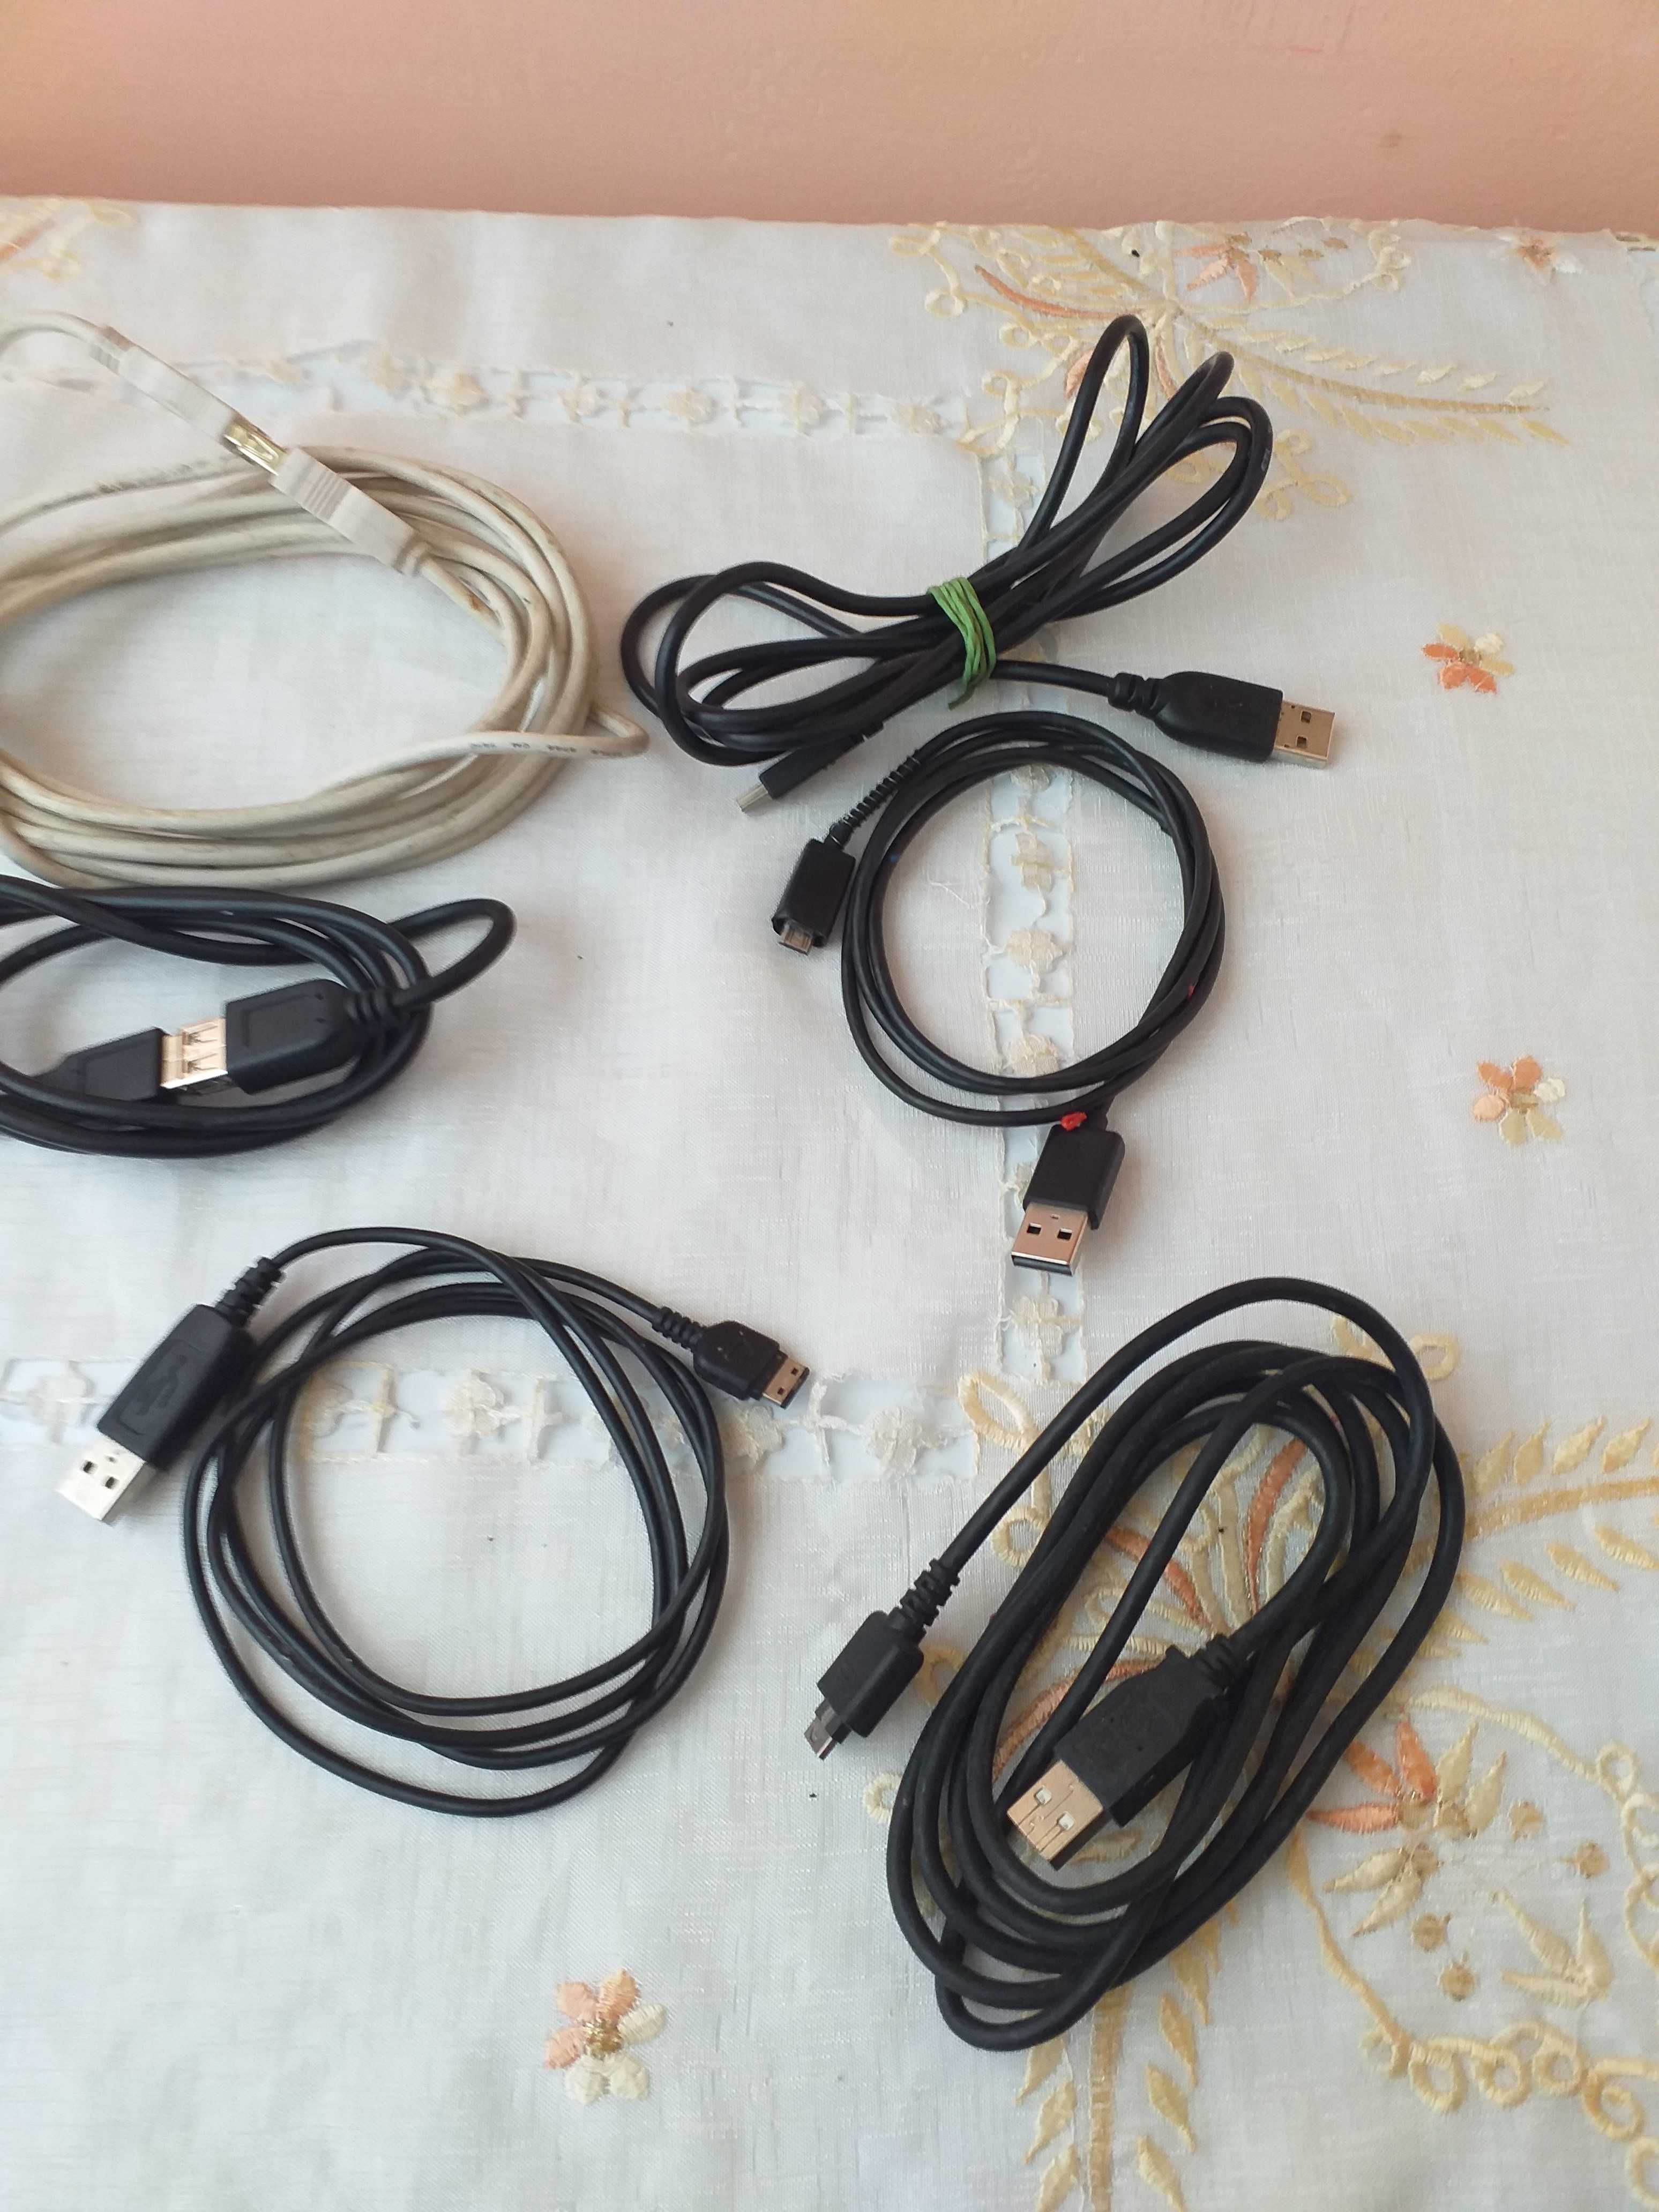 cablu usb mufa incarcare telefon+cablu boxe